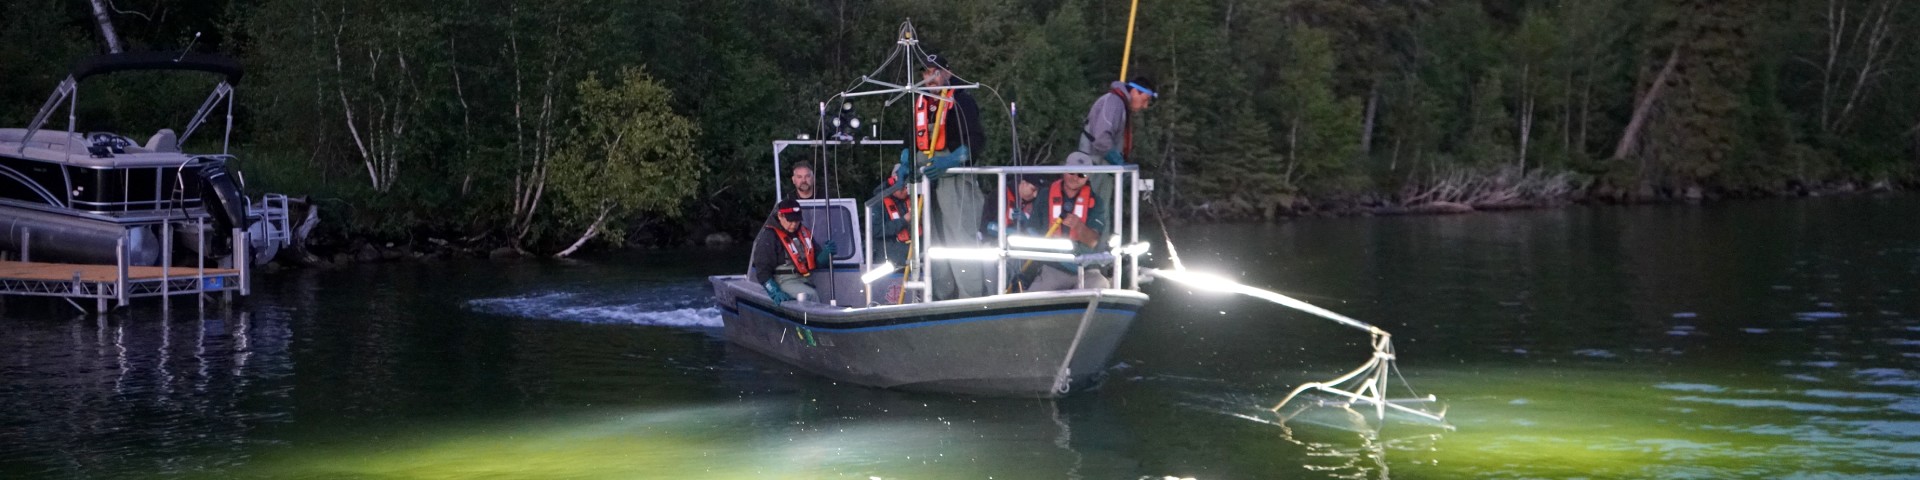 Les membres de l’équipage d’un bateau de pêche électrique à la tombée de la nuit illuminent le lac en faisant glisser les engins suspendus dans l’eau.